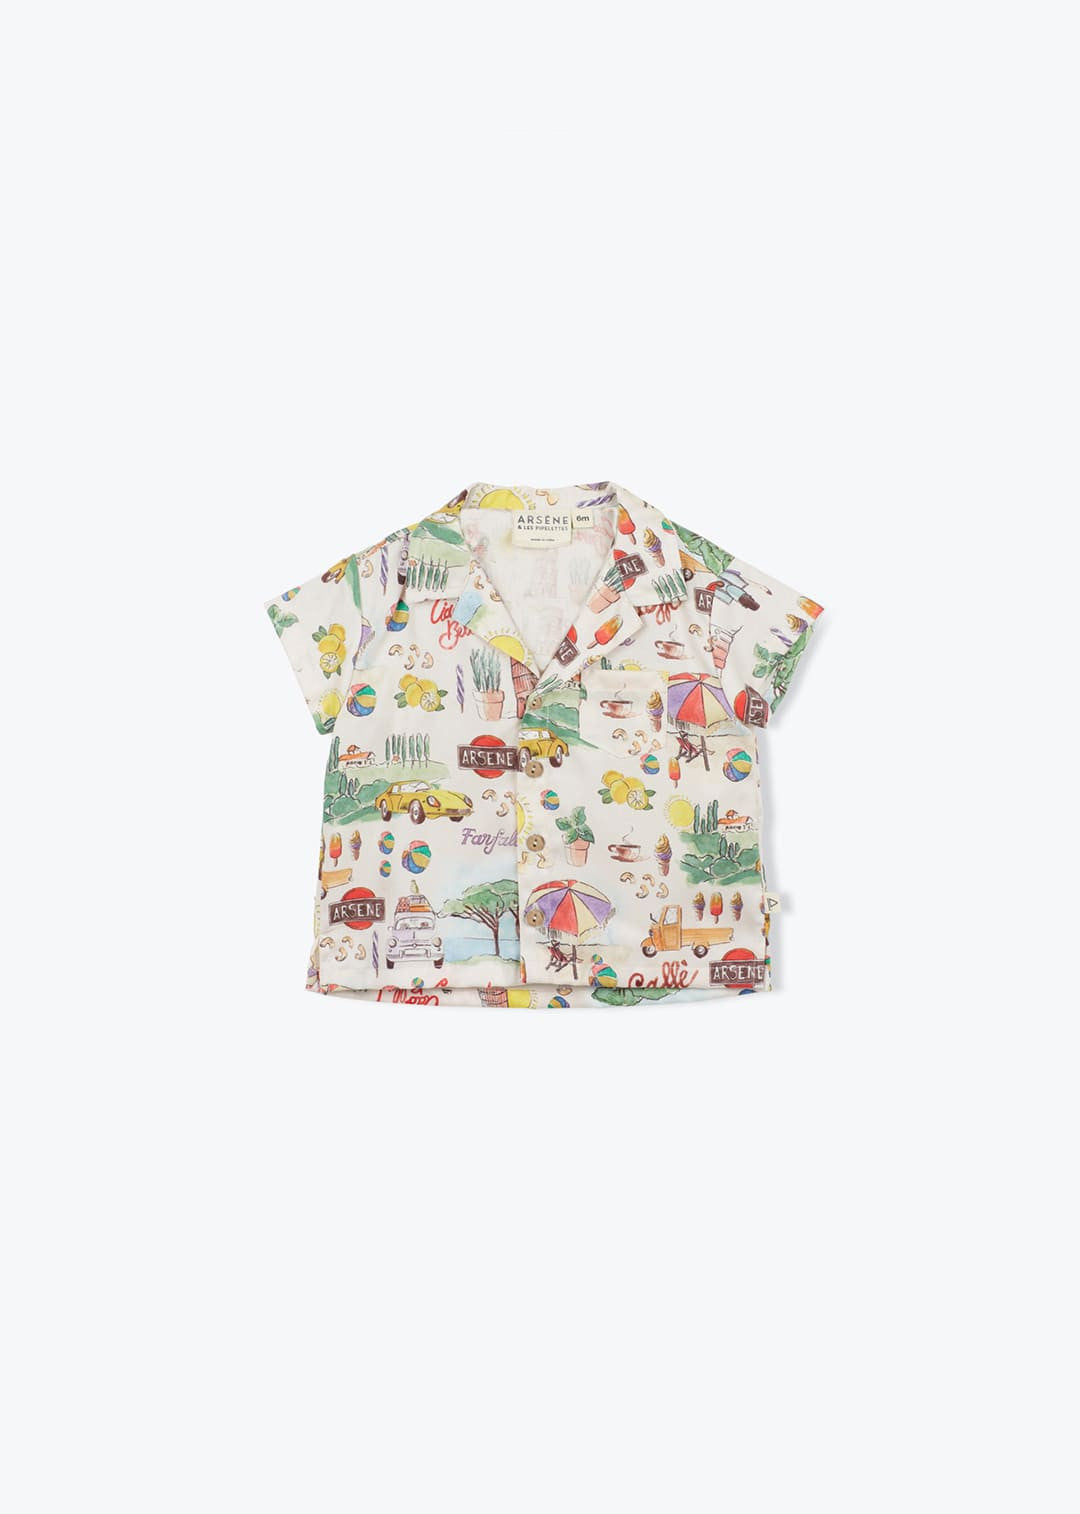 Exklusiv bedrucktes Babyhemd Italien für Jungen von Arsène et les Pipelettes .Exklusiv bedrucktes Babyhemd Italien für Jungen von Arsène et les Pipelettes .